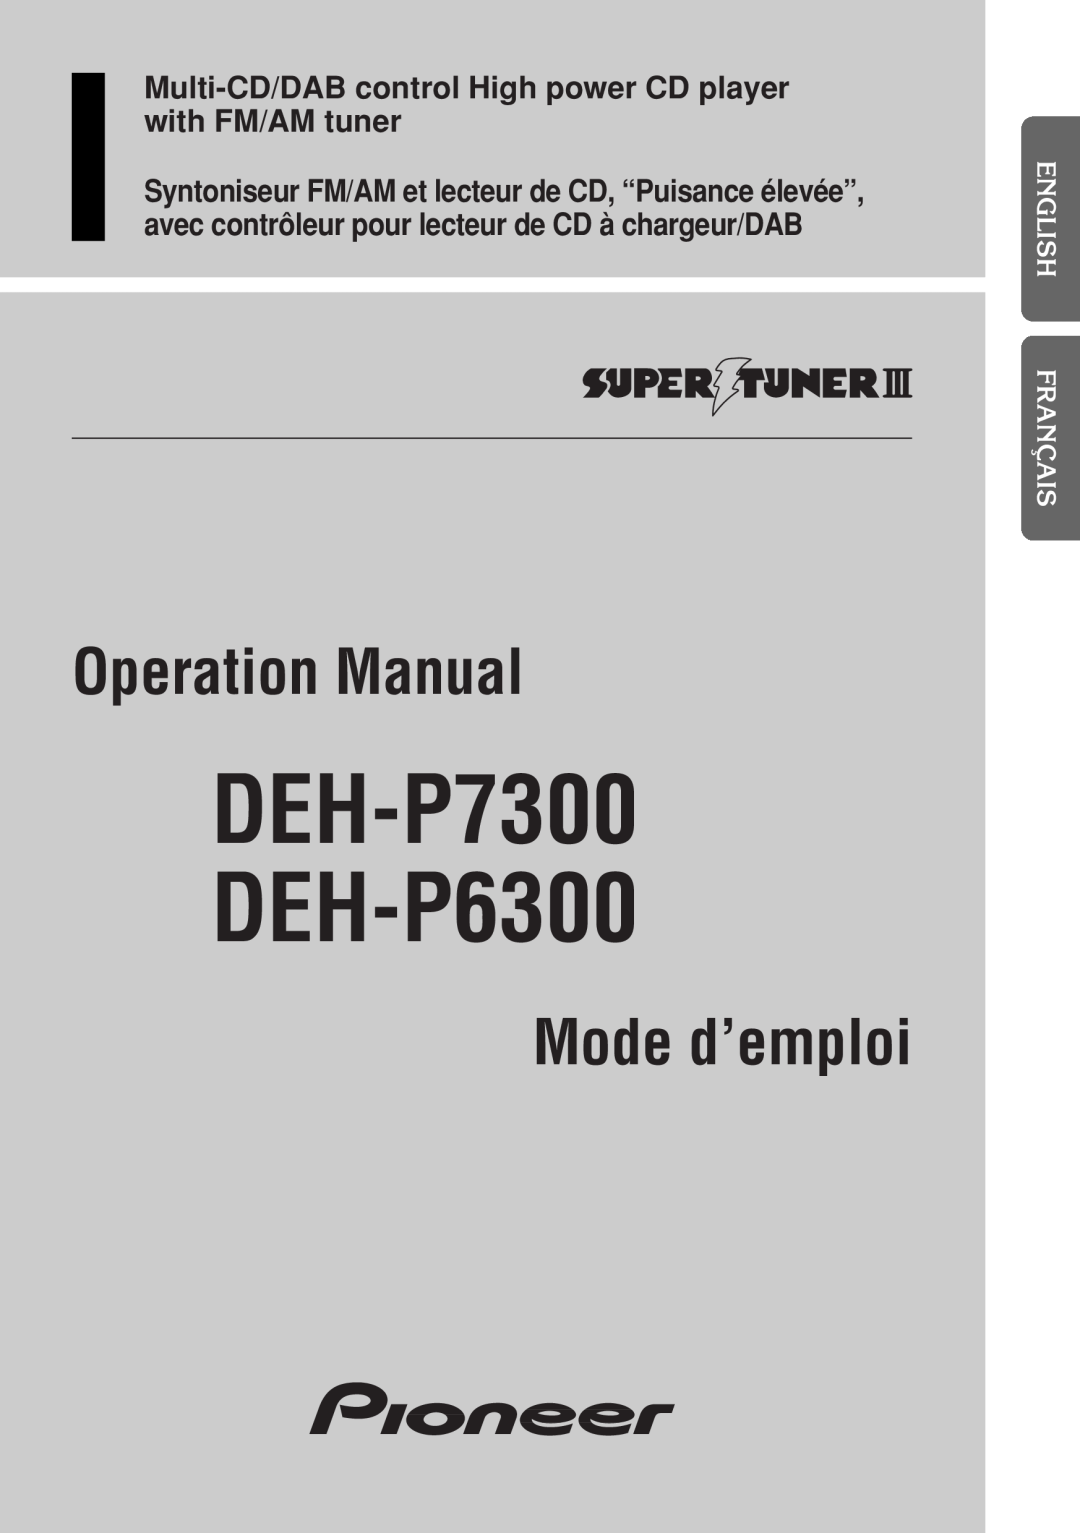 Pioneer operation manual English Français Deutsch Français Italiano Nederlands, DEH-P7300 DEH-P6300, Mode d’emploi 